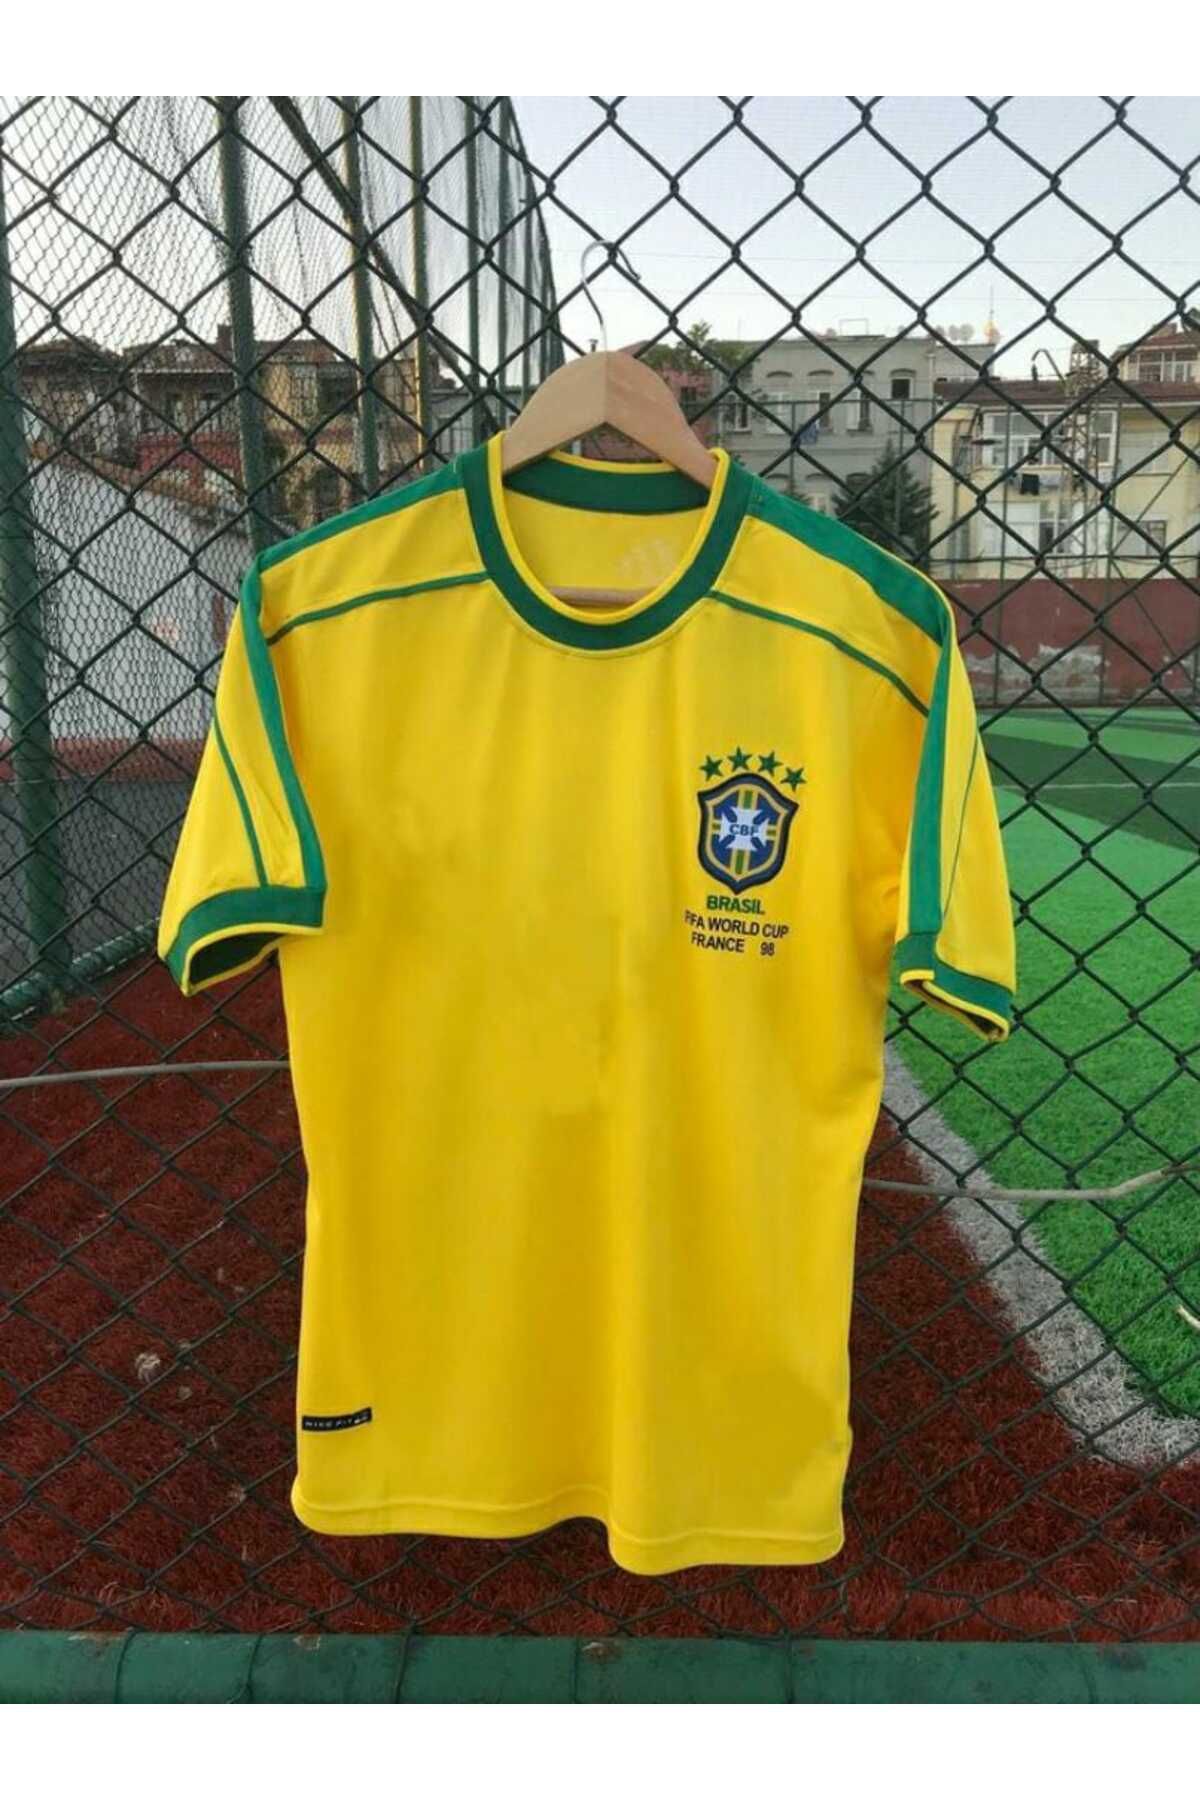 BYSPORTAKUS Brezilya Milli Takımı 98 Dünya Kupası Roberto Carlos Nostalji Forması